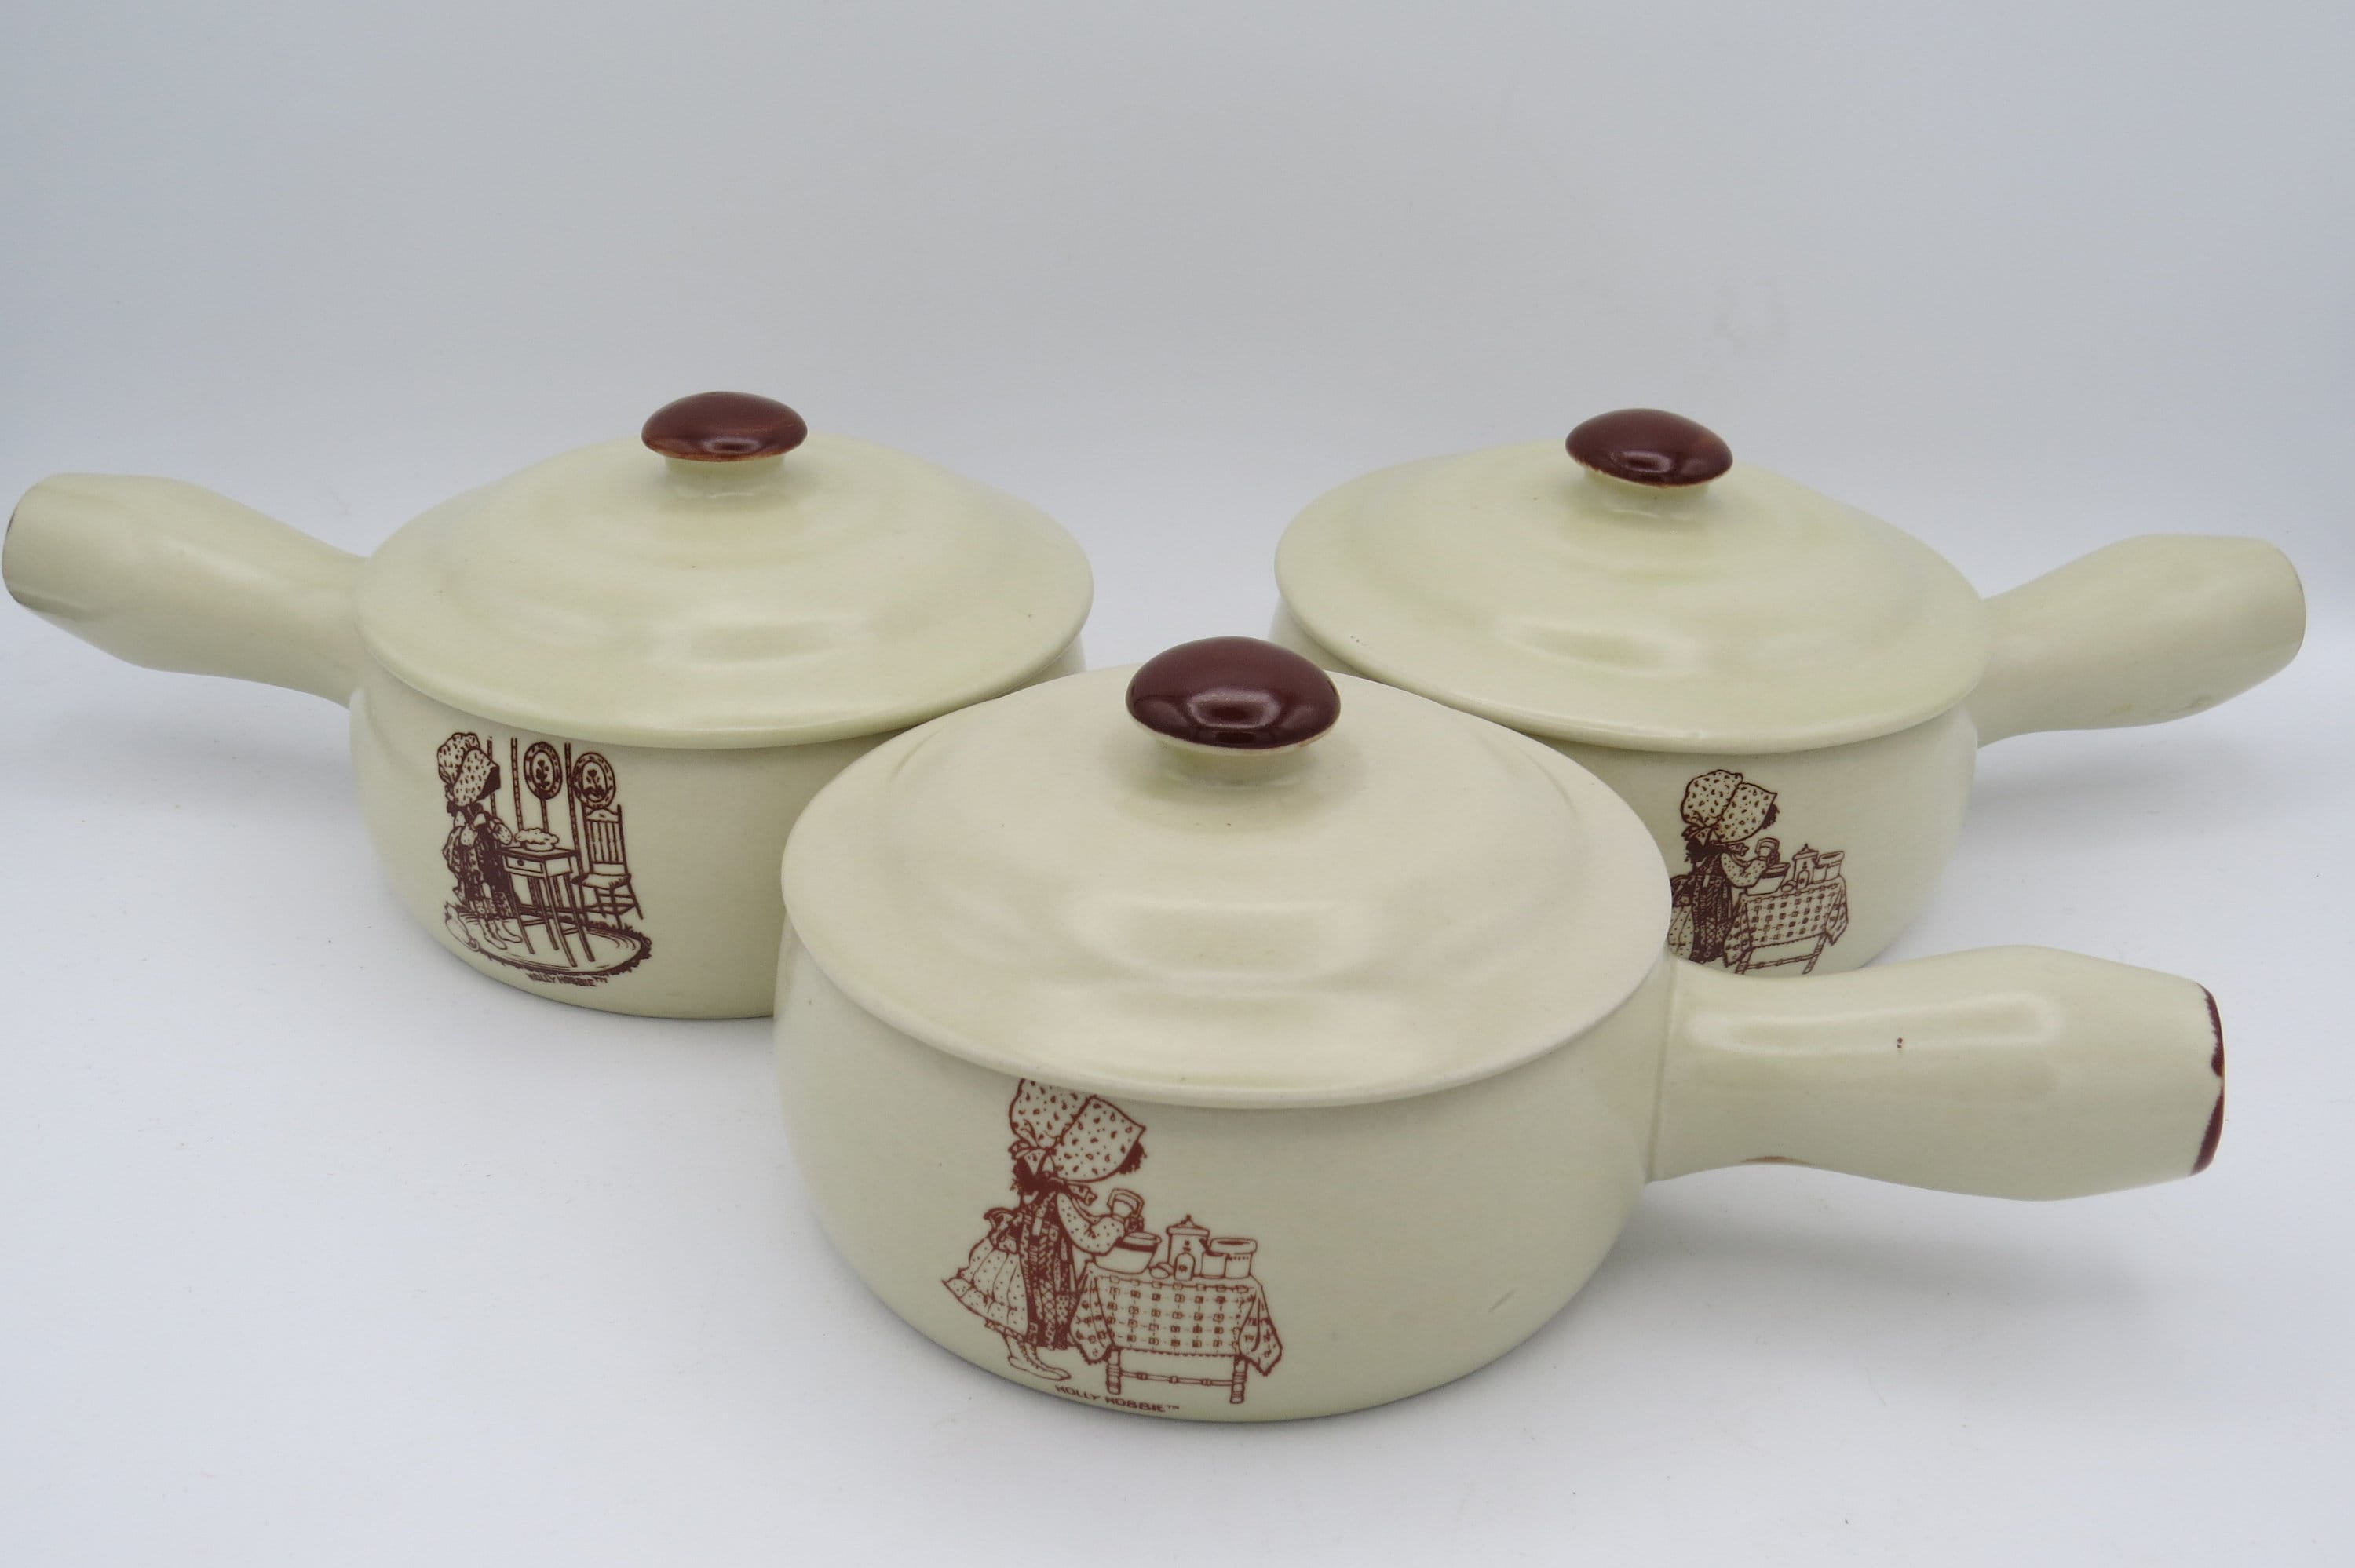 Vintage Holly Hobbie Soup Bowls, Set of 3, Ceramic Soup Bowls Lids,  Handles, Onion Soup Bowls, Cookware 